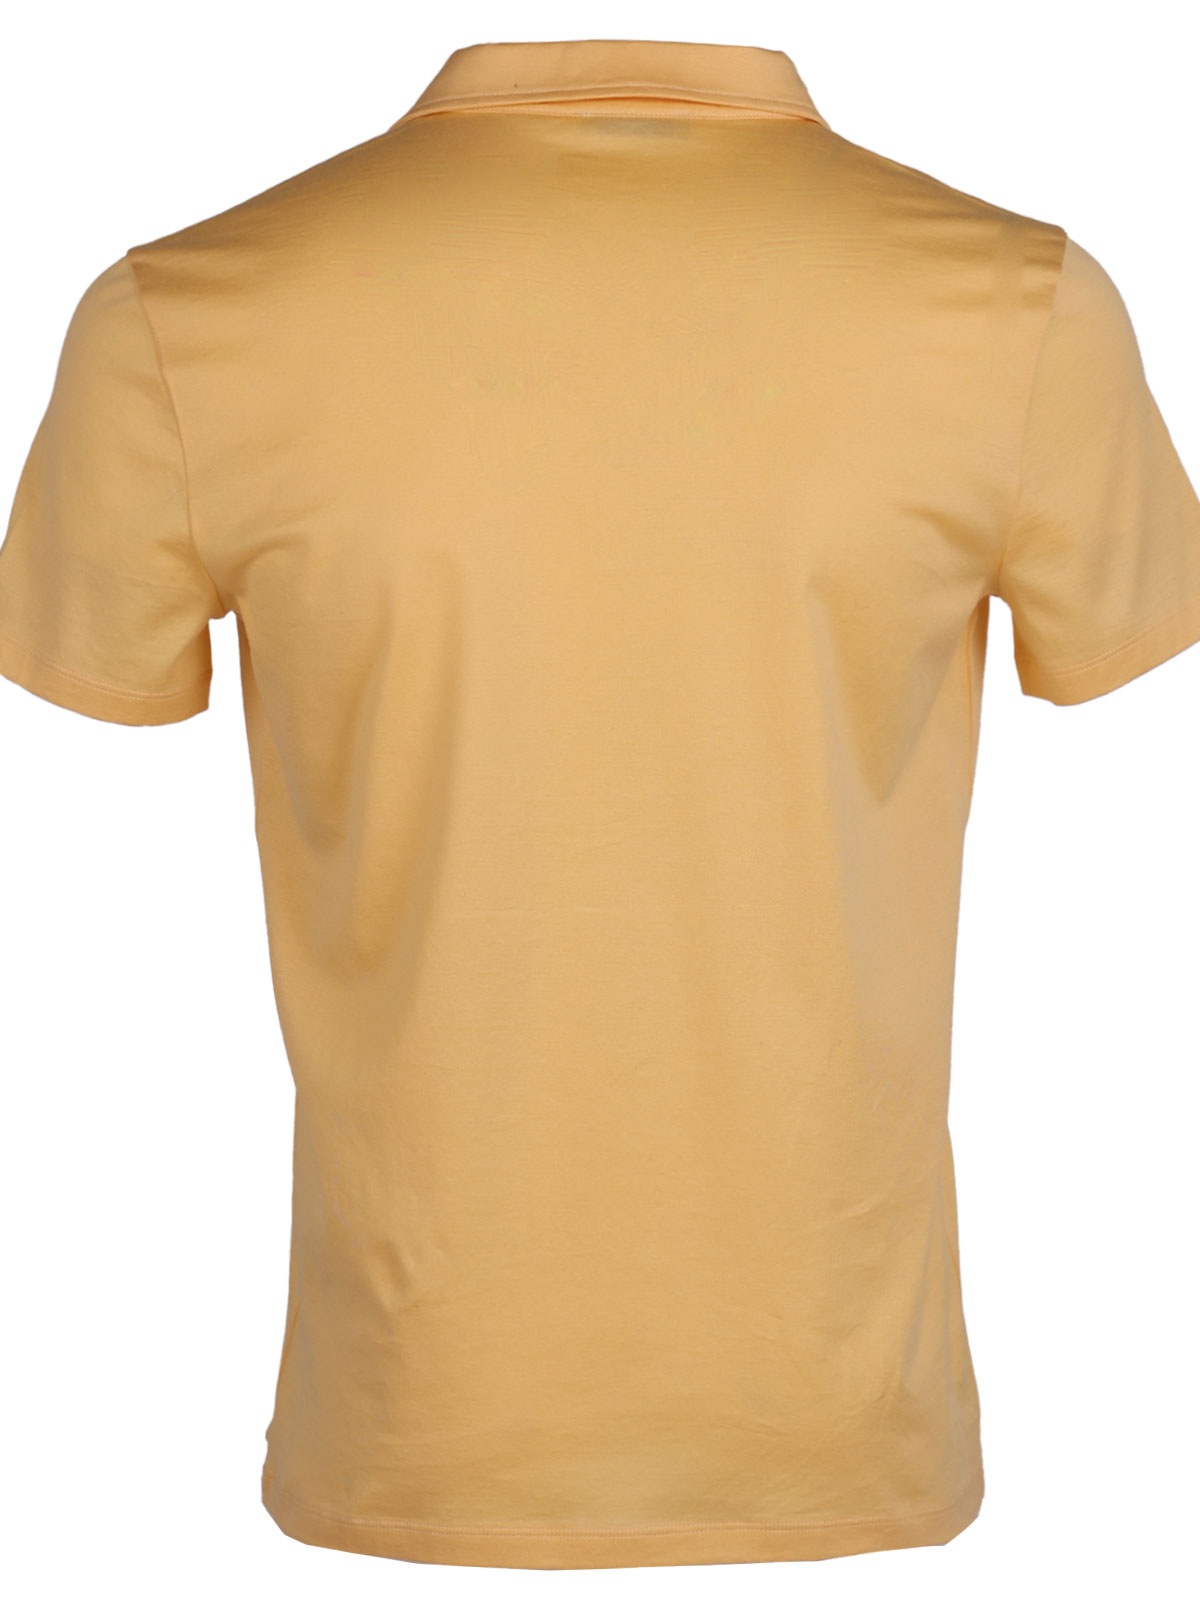 Μπλουζάκι σε κίτρινο χρώμα με γιακά - 94417 € 33.18 img2